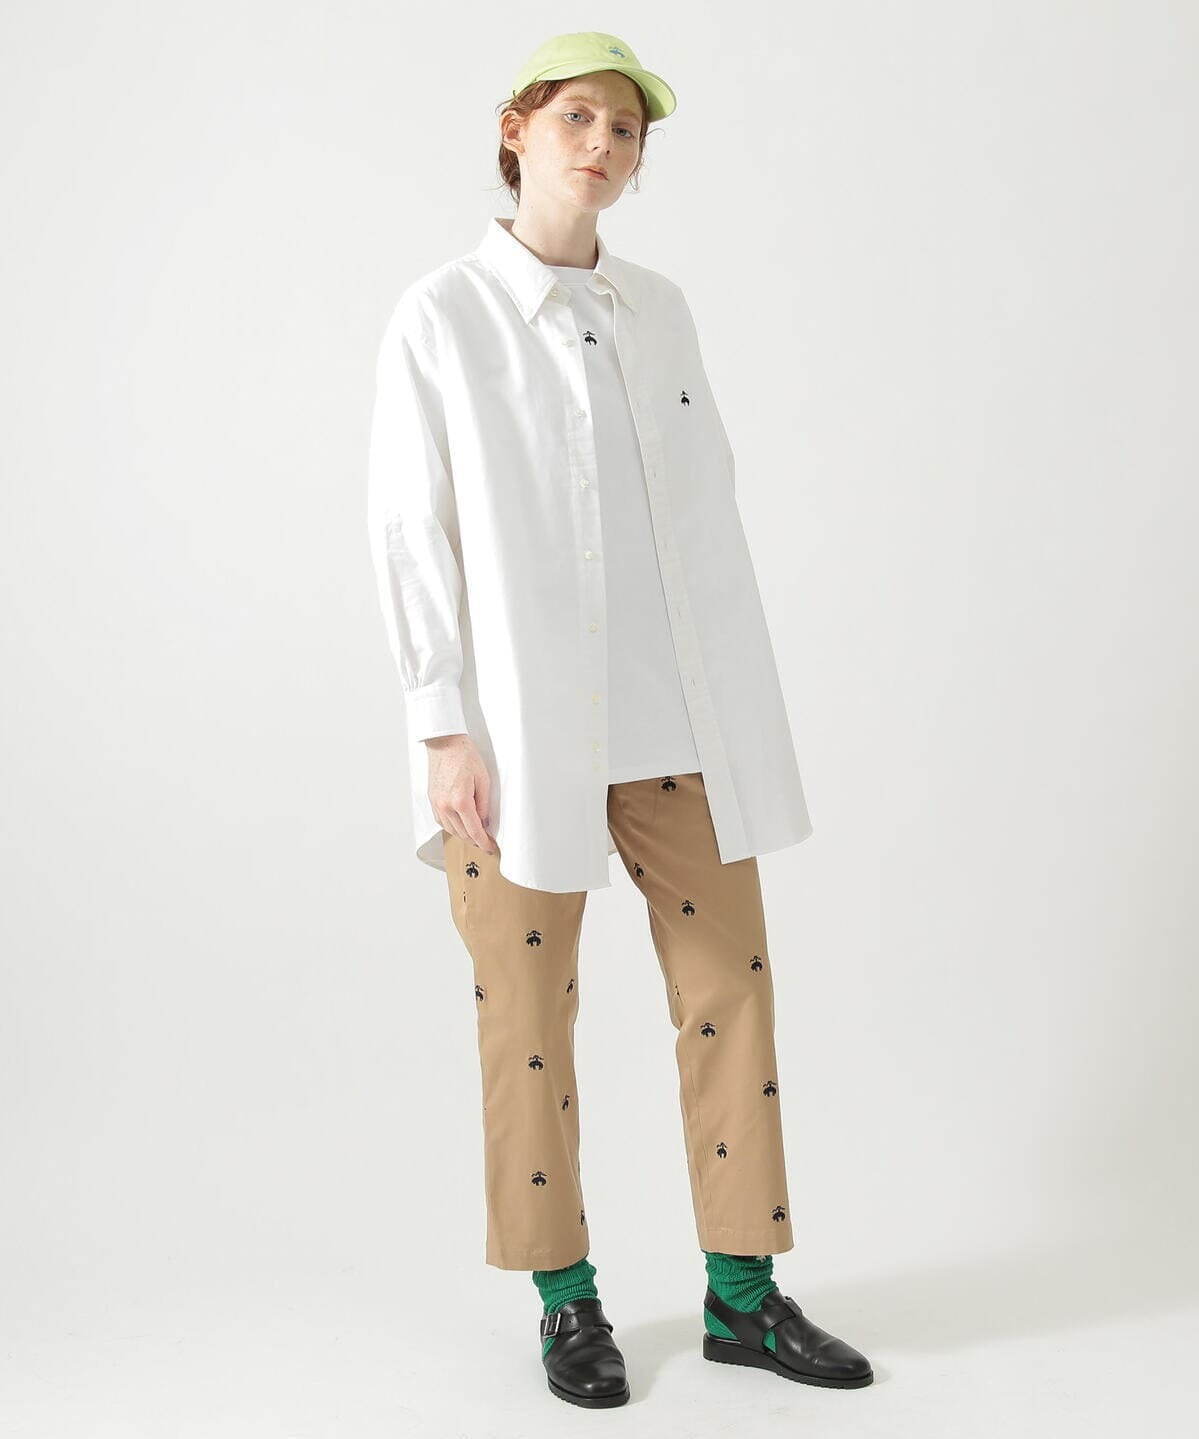 ブルックス ブラザーズ“日本初”別注ウィメンズブレザーやシャツ、ビームス ボーイとコラボ - ファッションプレス